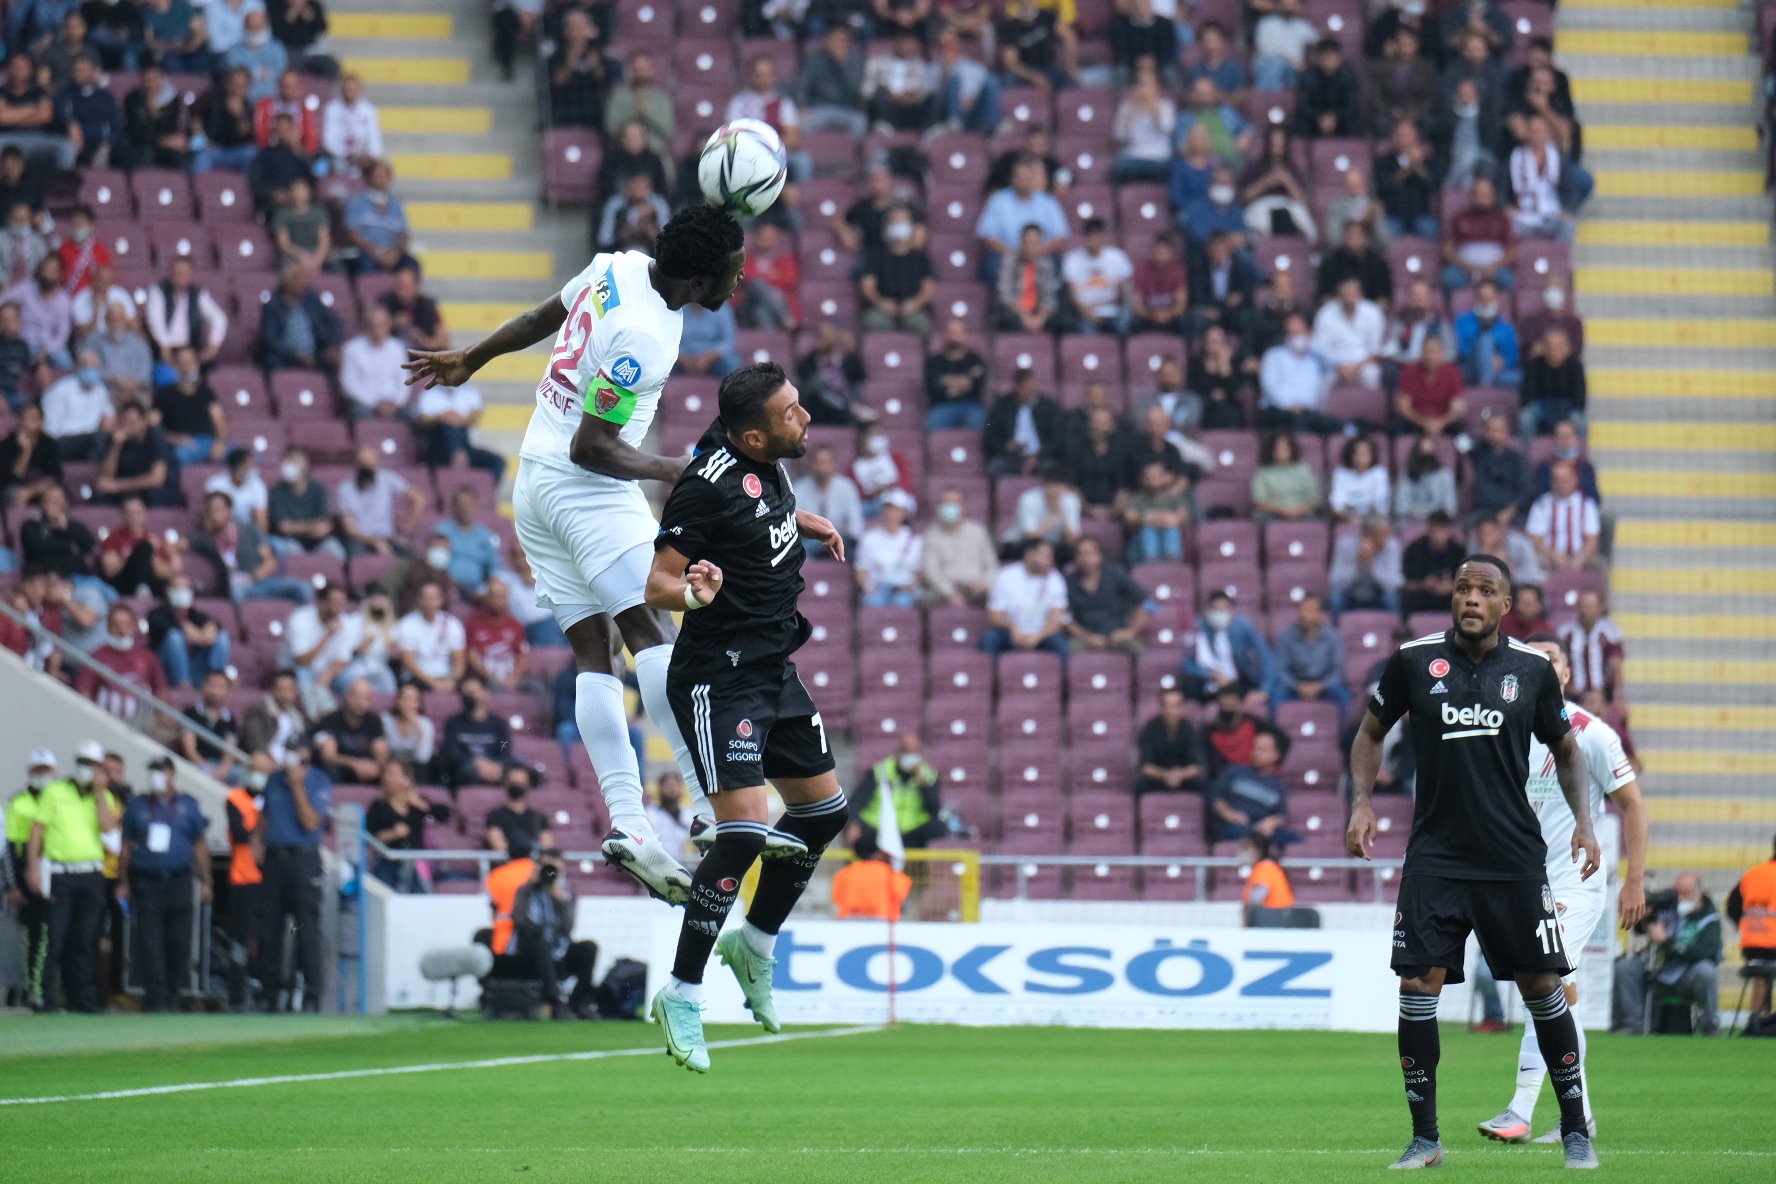 <p>Maçtaki tek golü 6. dakikada Saba Lobjanidze kaydetti. 73. dakikada Mehmet Topal ile beraberliği yakalayan Beşiktaş'ın golü, VAR incelemesi sonucu iptal edildi.</p>